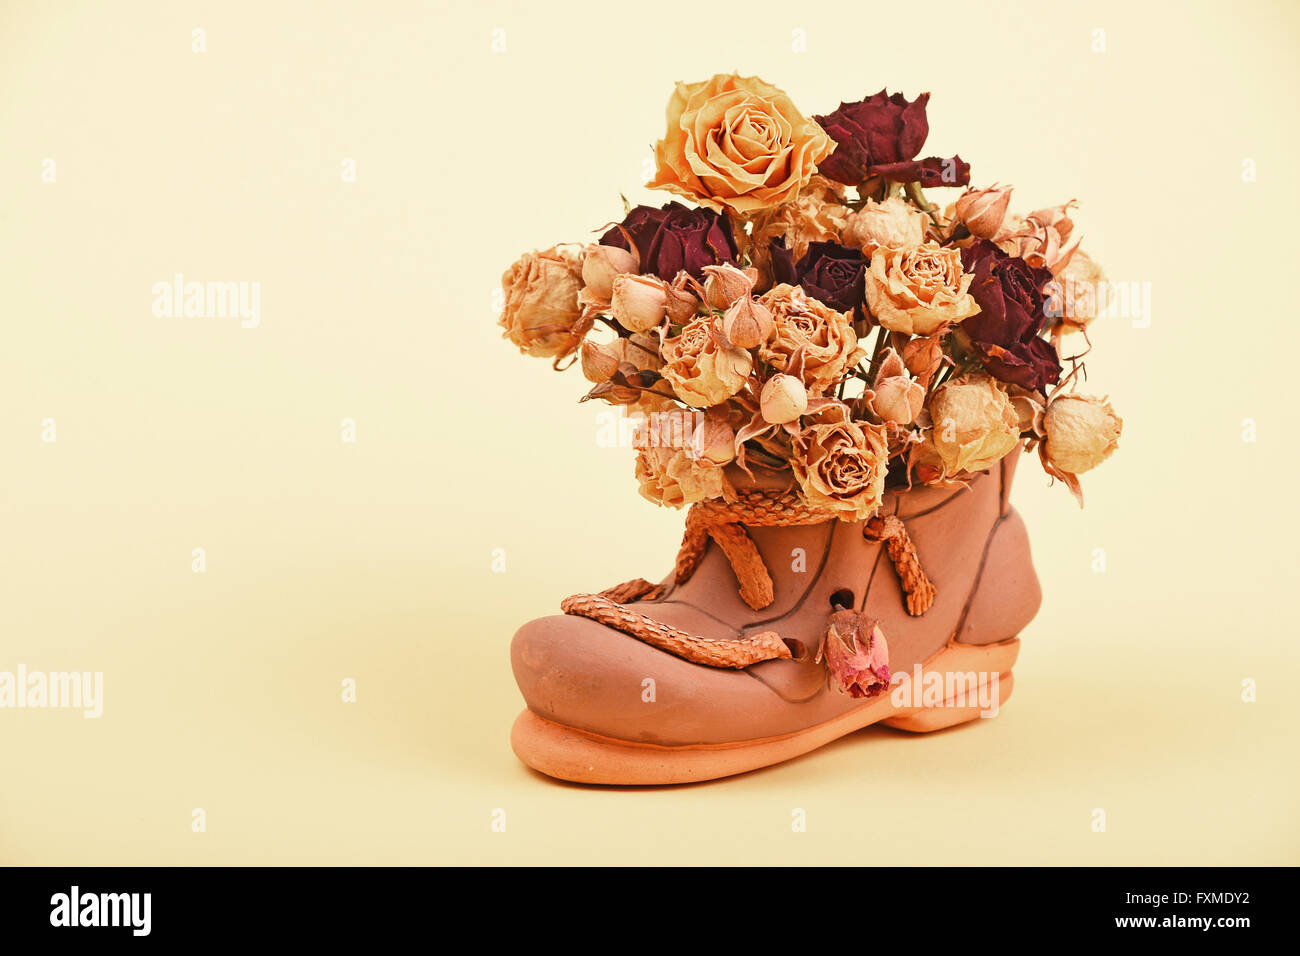 Essiccato di rosso e di giallo rose bouquet di fiori in ceramica piccolo scarpa sulla gara giallo sullo sfondo della carta Foto Stock